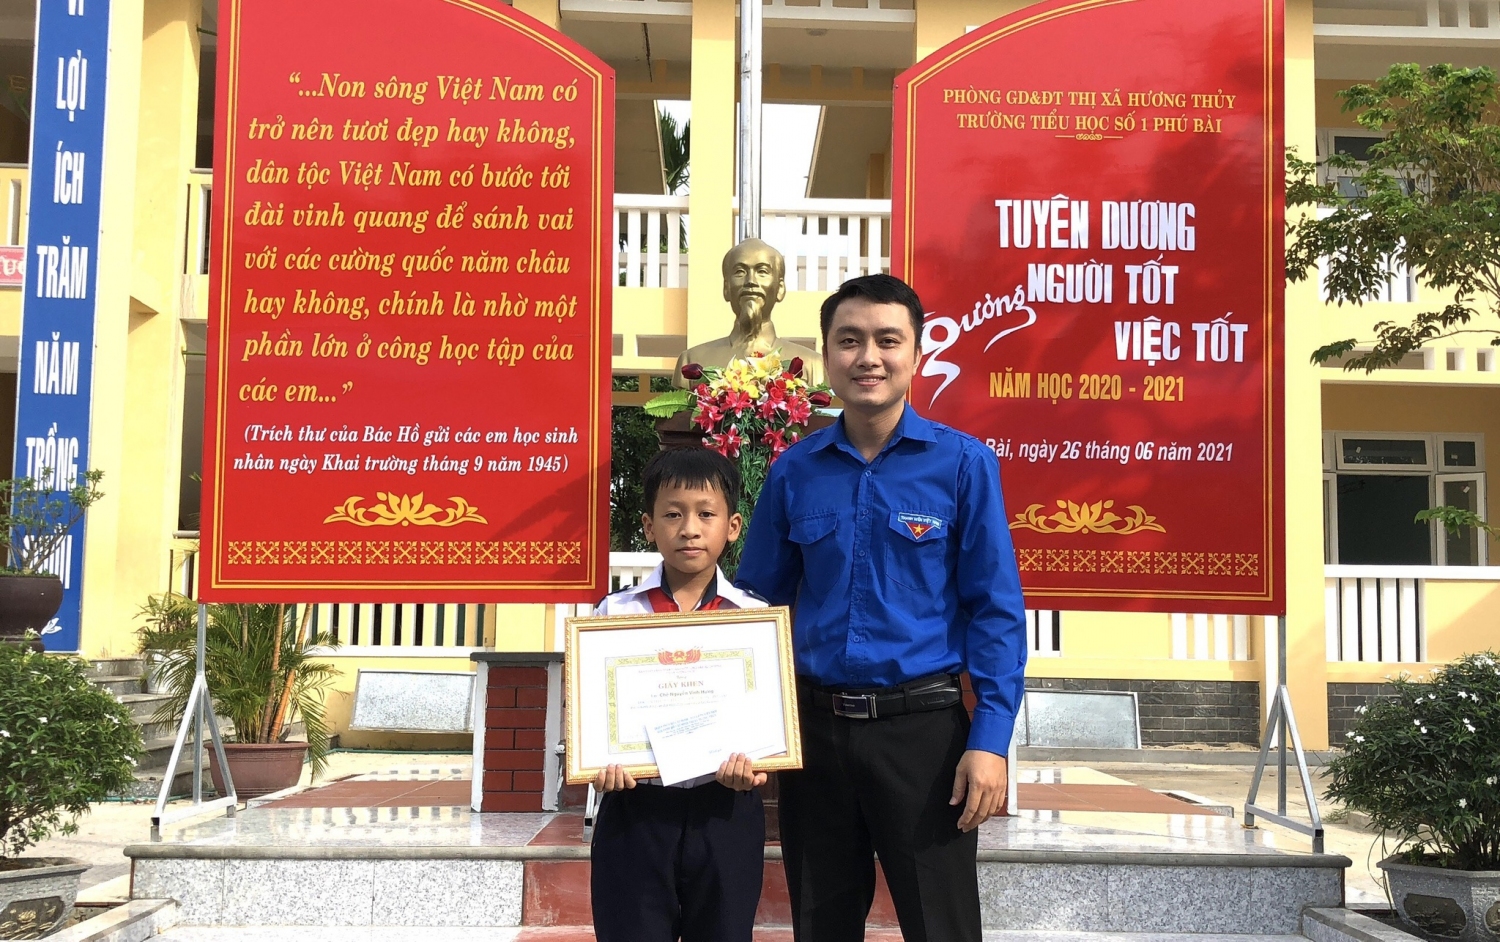 Em Chế Vĩnh Hưng đóng góp toàn bộ tiền thưởng 1 triệu đồng vào Quỹ phòng chống dịch Covid-19 của P.Phú Bài, Thừa Thiên Huế